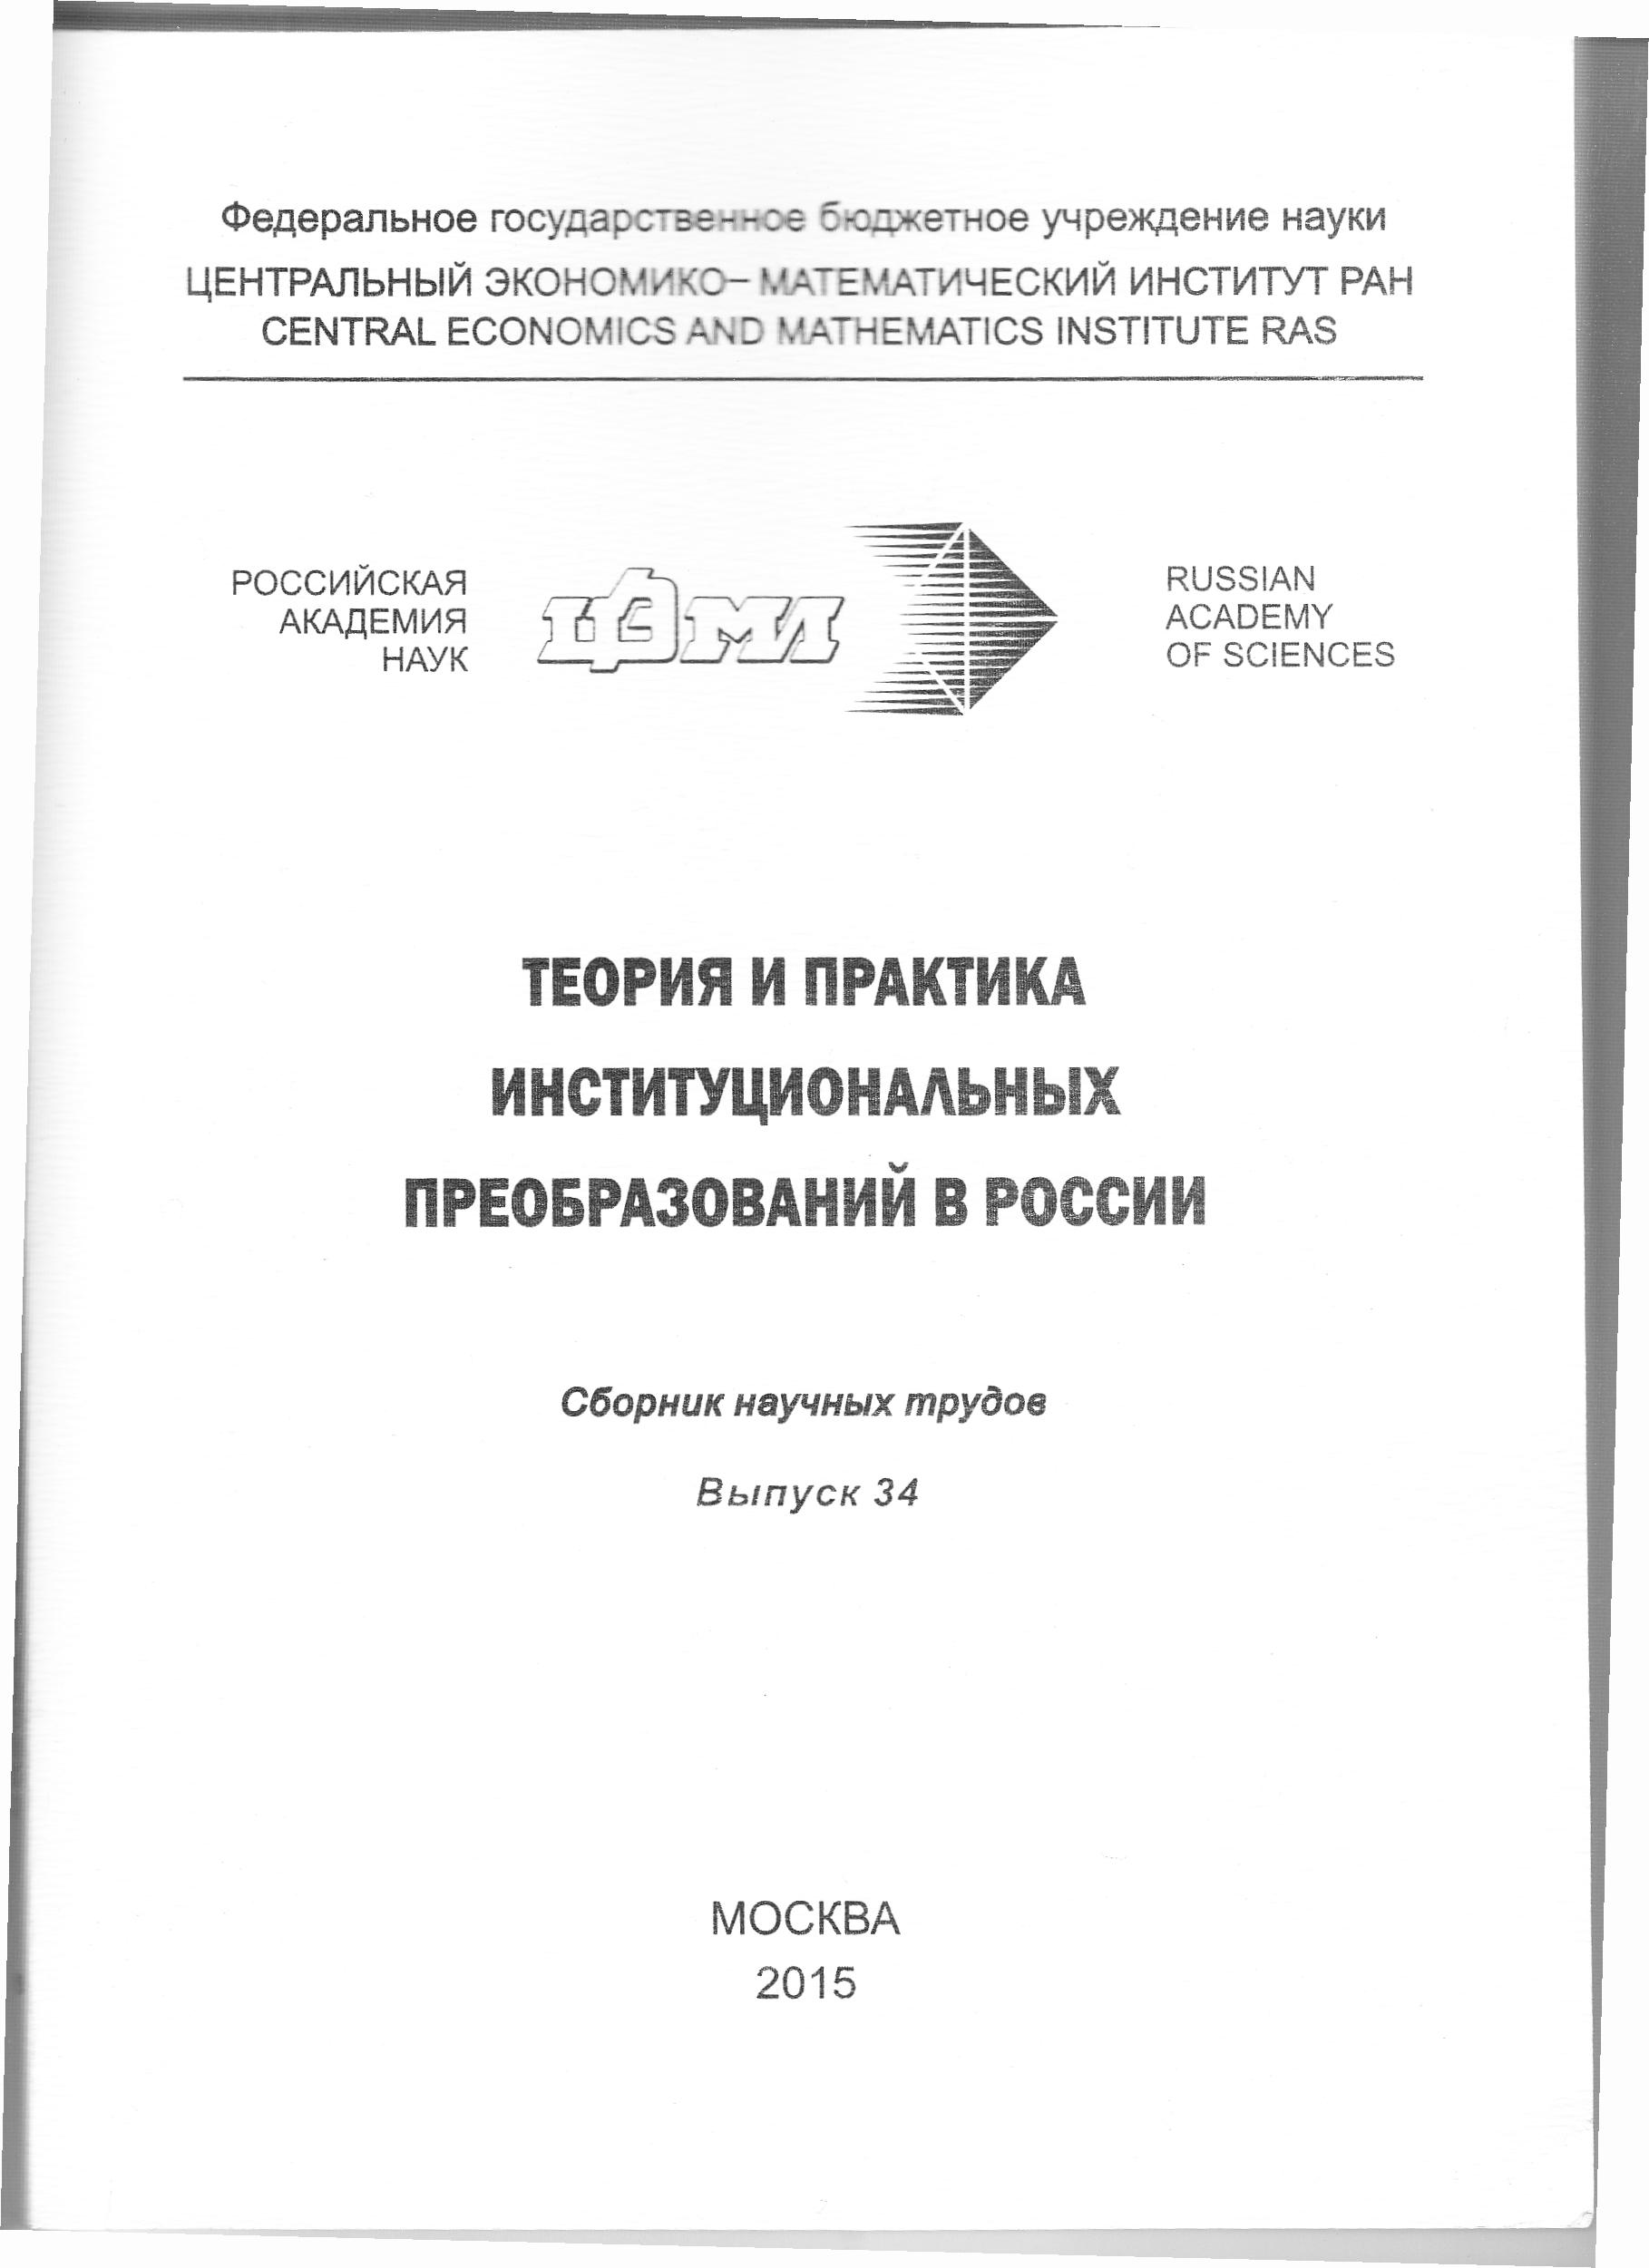 Теория и практика институциональных преобразований в России